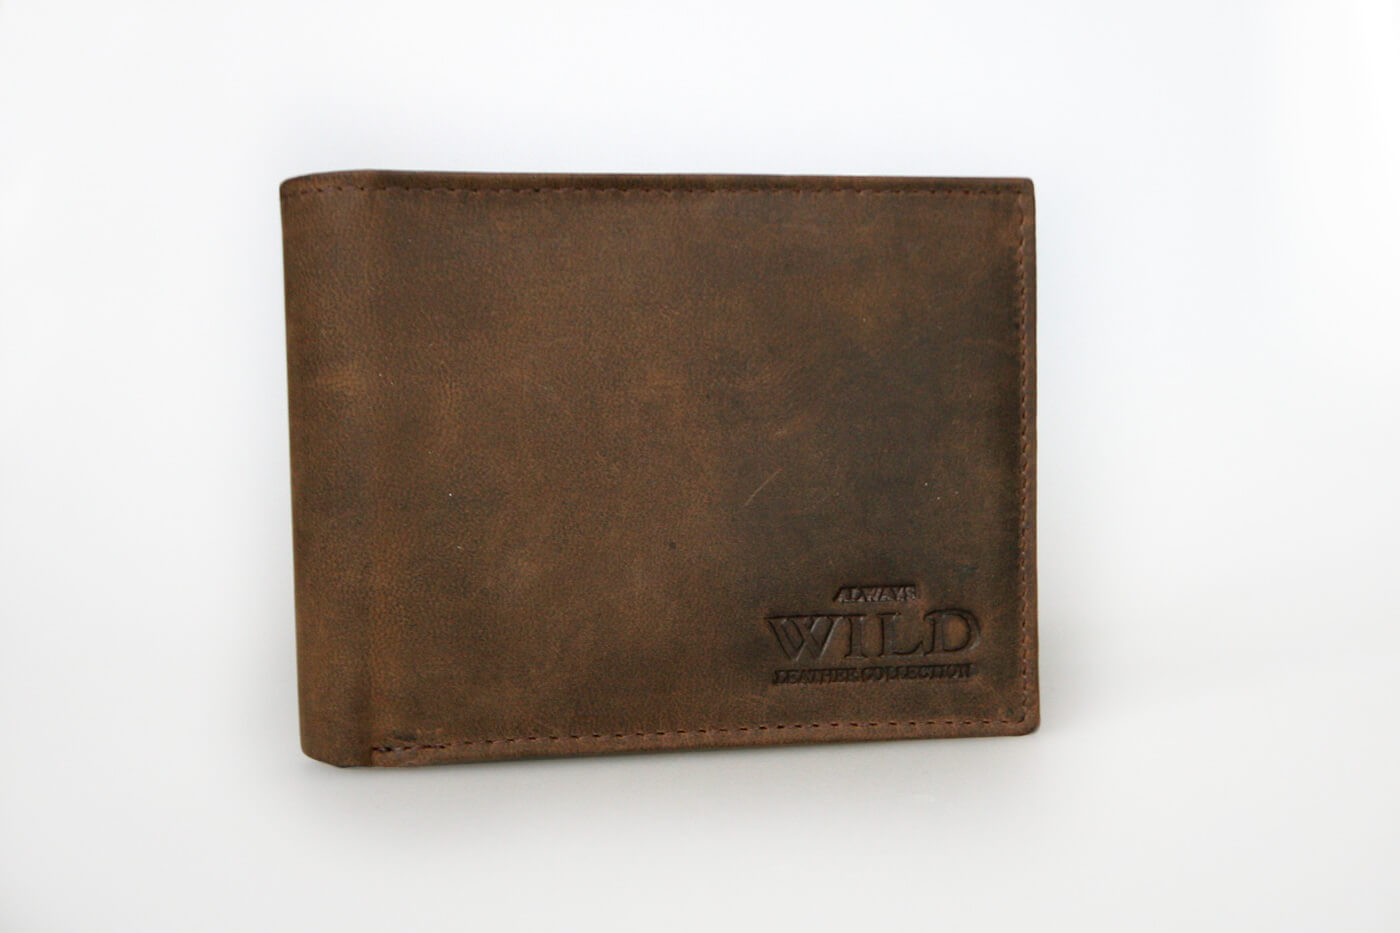 WILD Pánska kožená peňaženka na šírku - hnedá bez zapínania (šírka 12 cm x výška 9,5 cm)